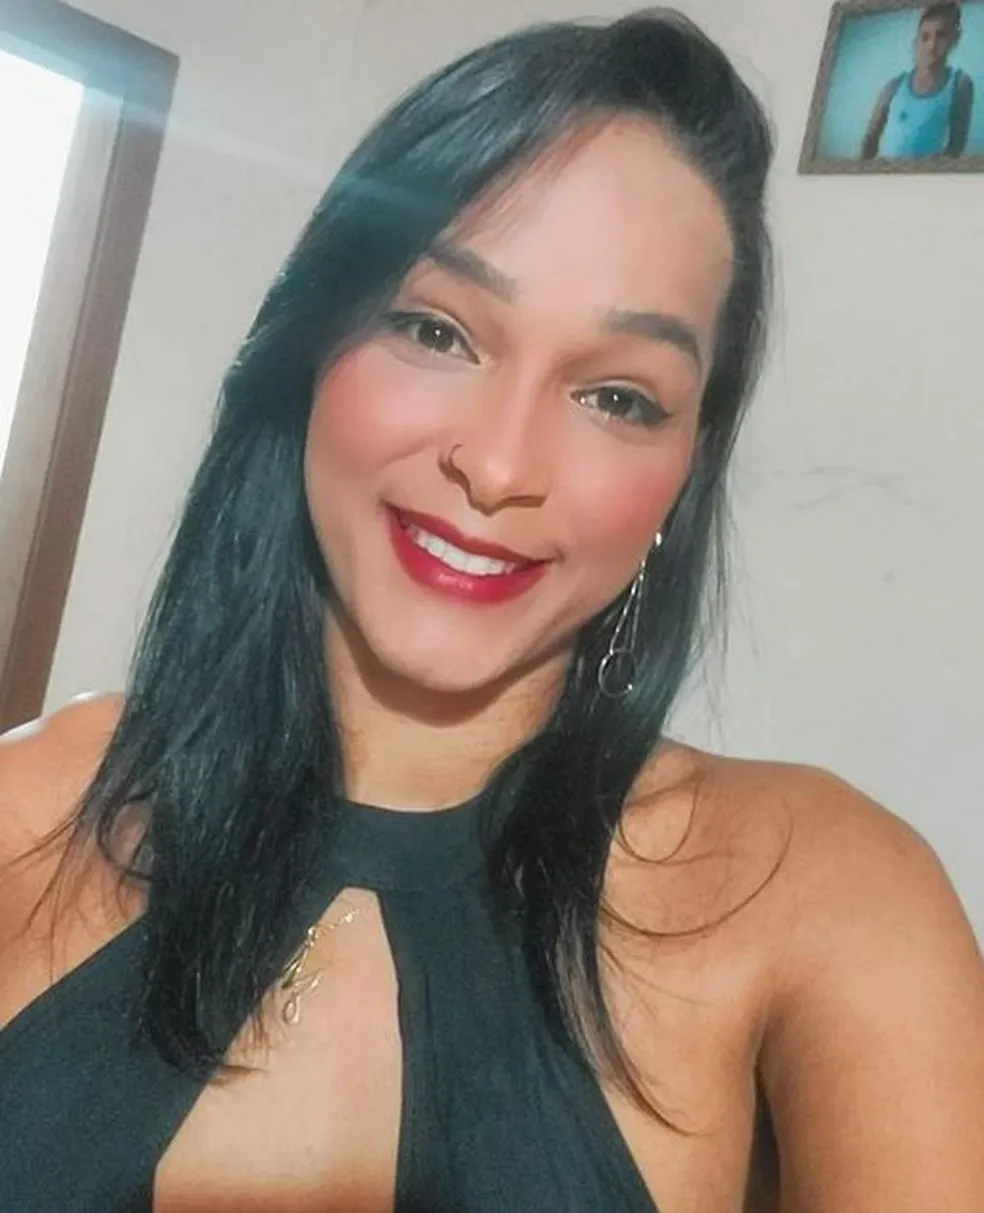 Mariana da Silva Ribeiro foi esfaqueada diversas vezes, segundo a defesa - Reprodução